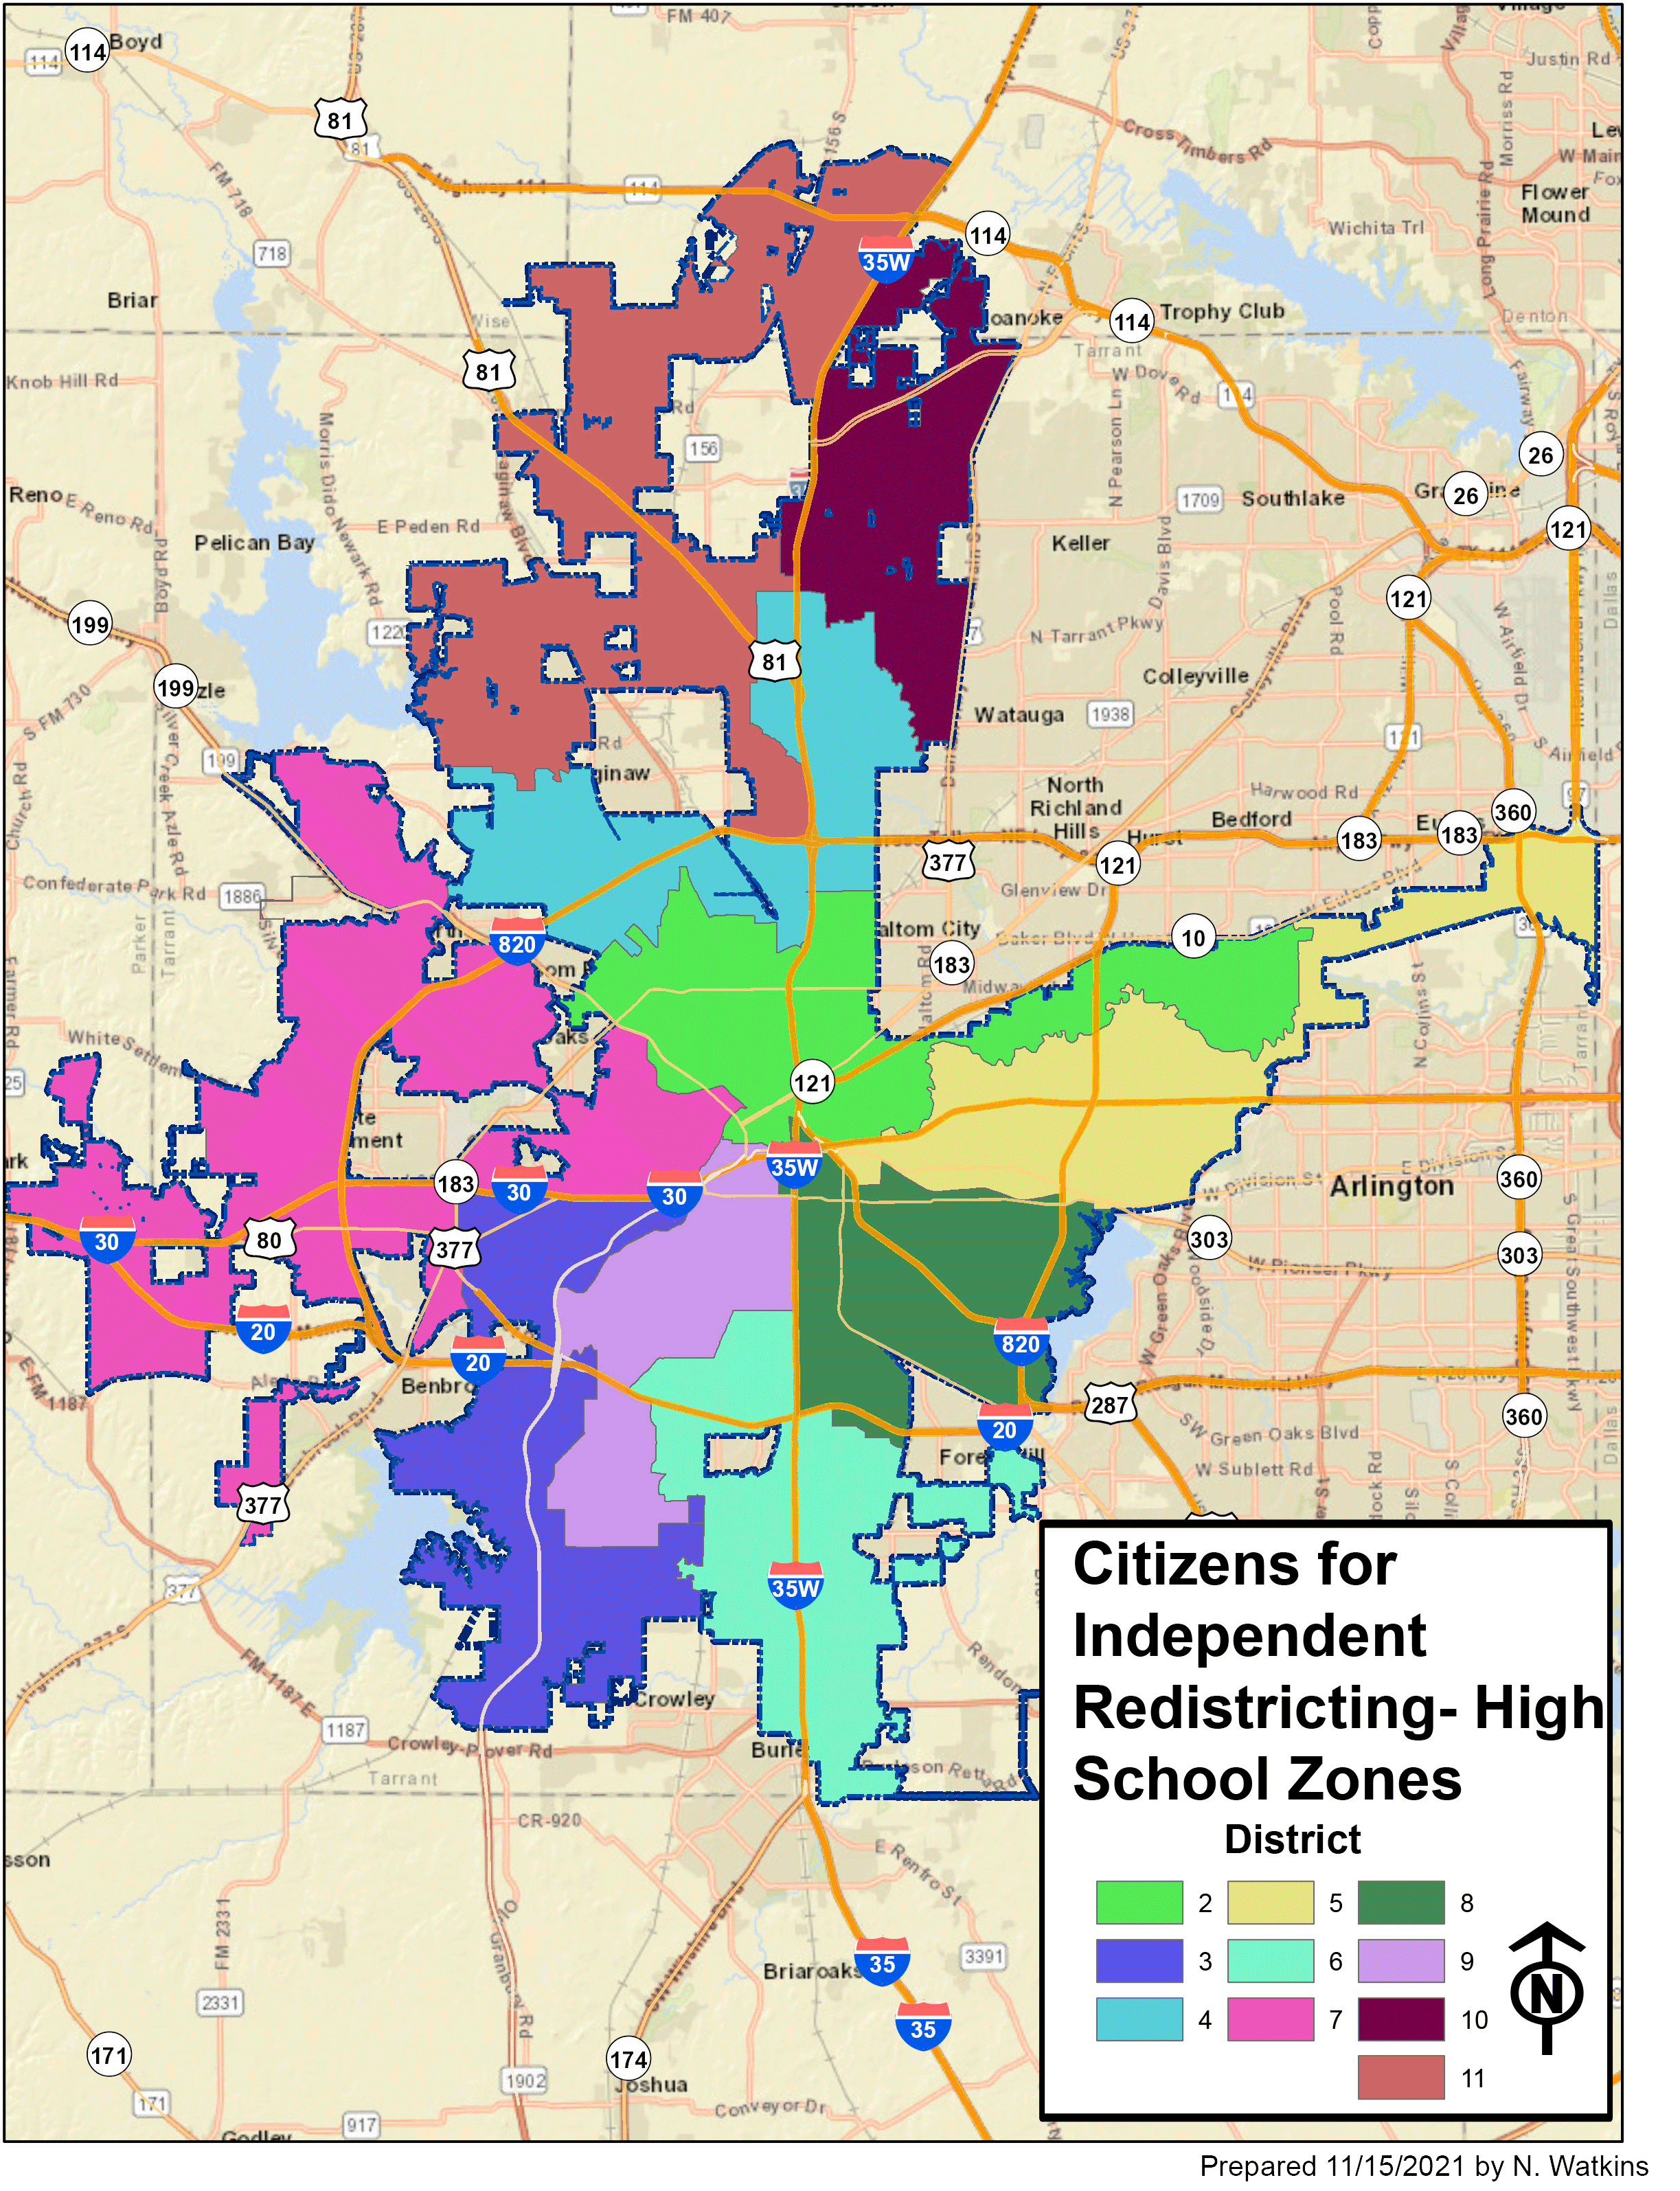 High School Zones